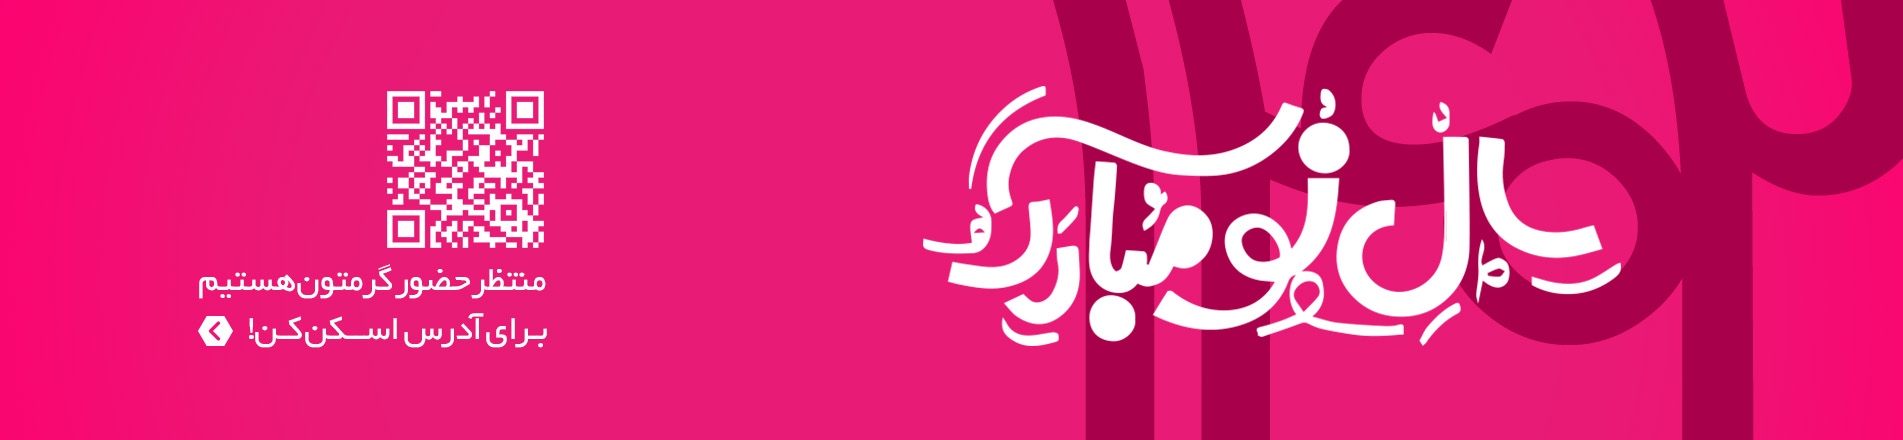 تبریک عید قشم خرید اینترنتی